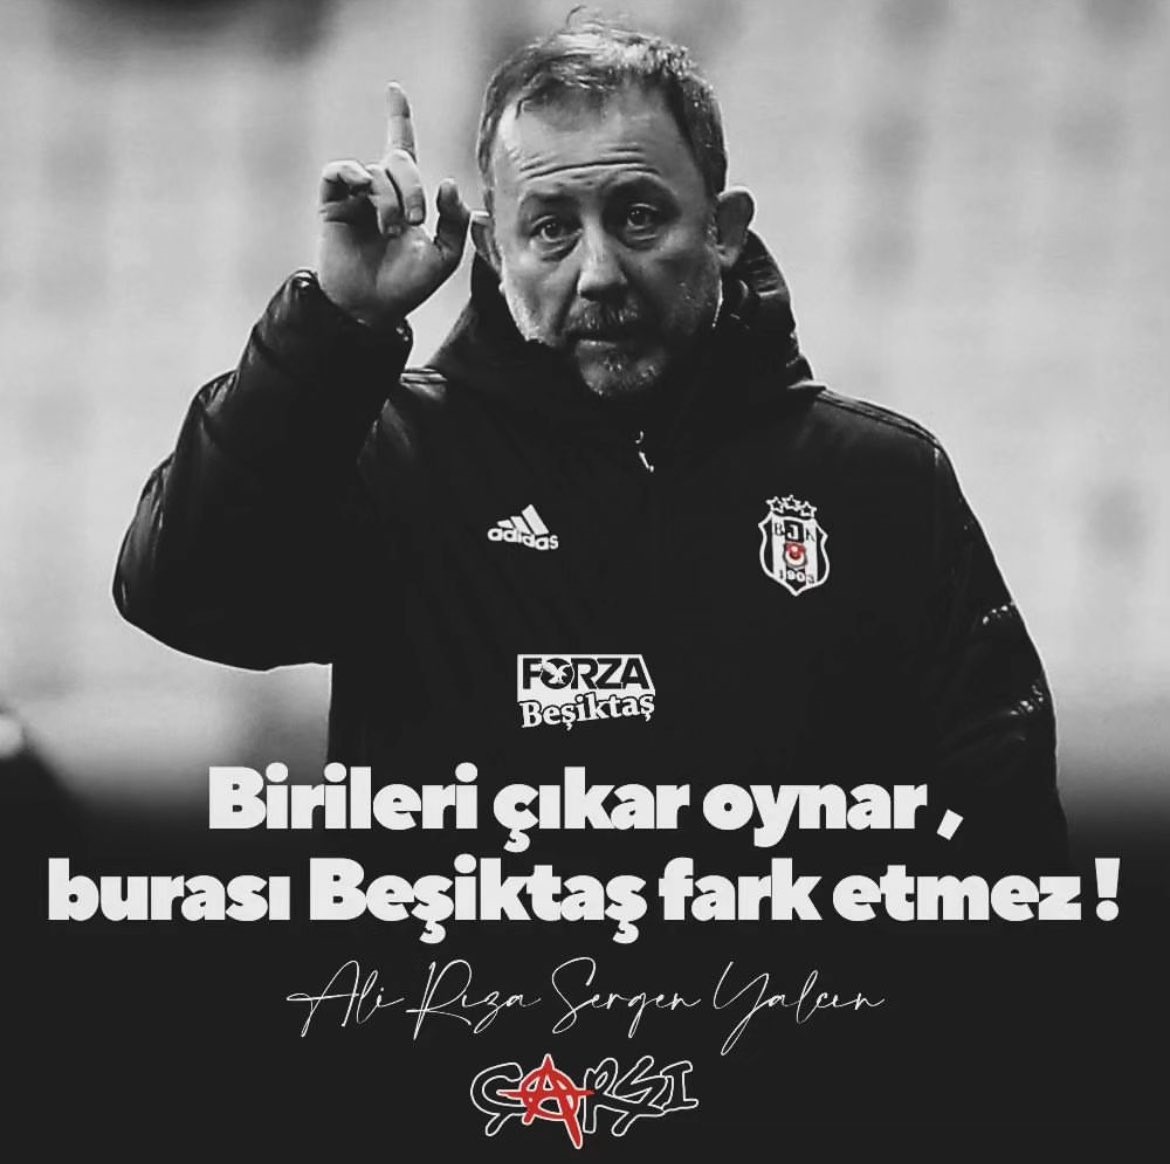 'Birileri çıkar oynar, burası #Beşiktaş fark etmez.' #SergenYalçın Come to @Besiktas 🦅